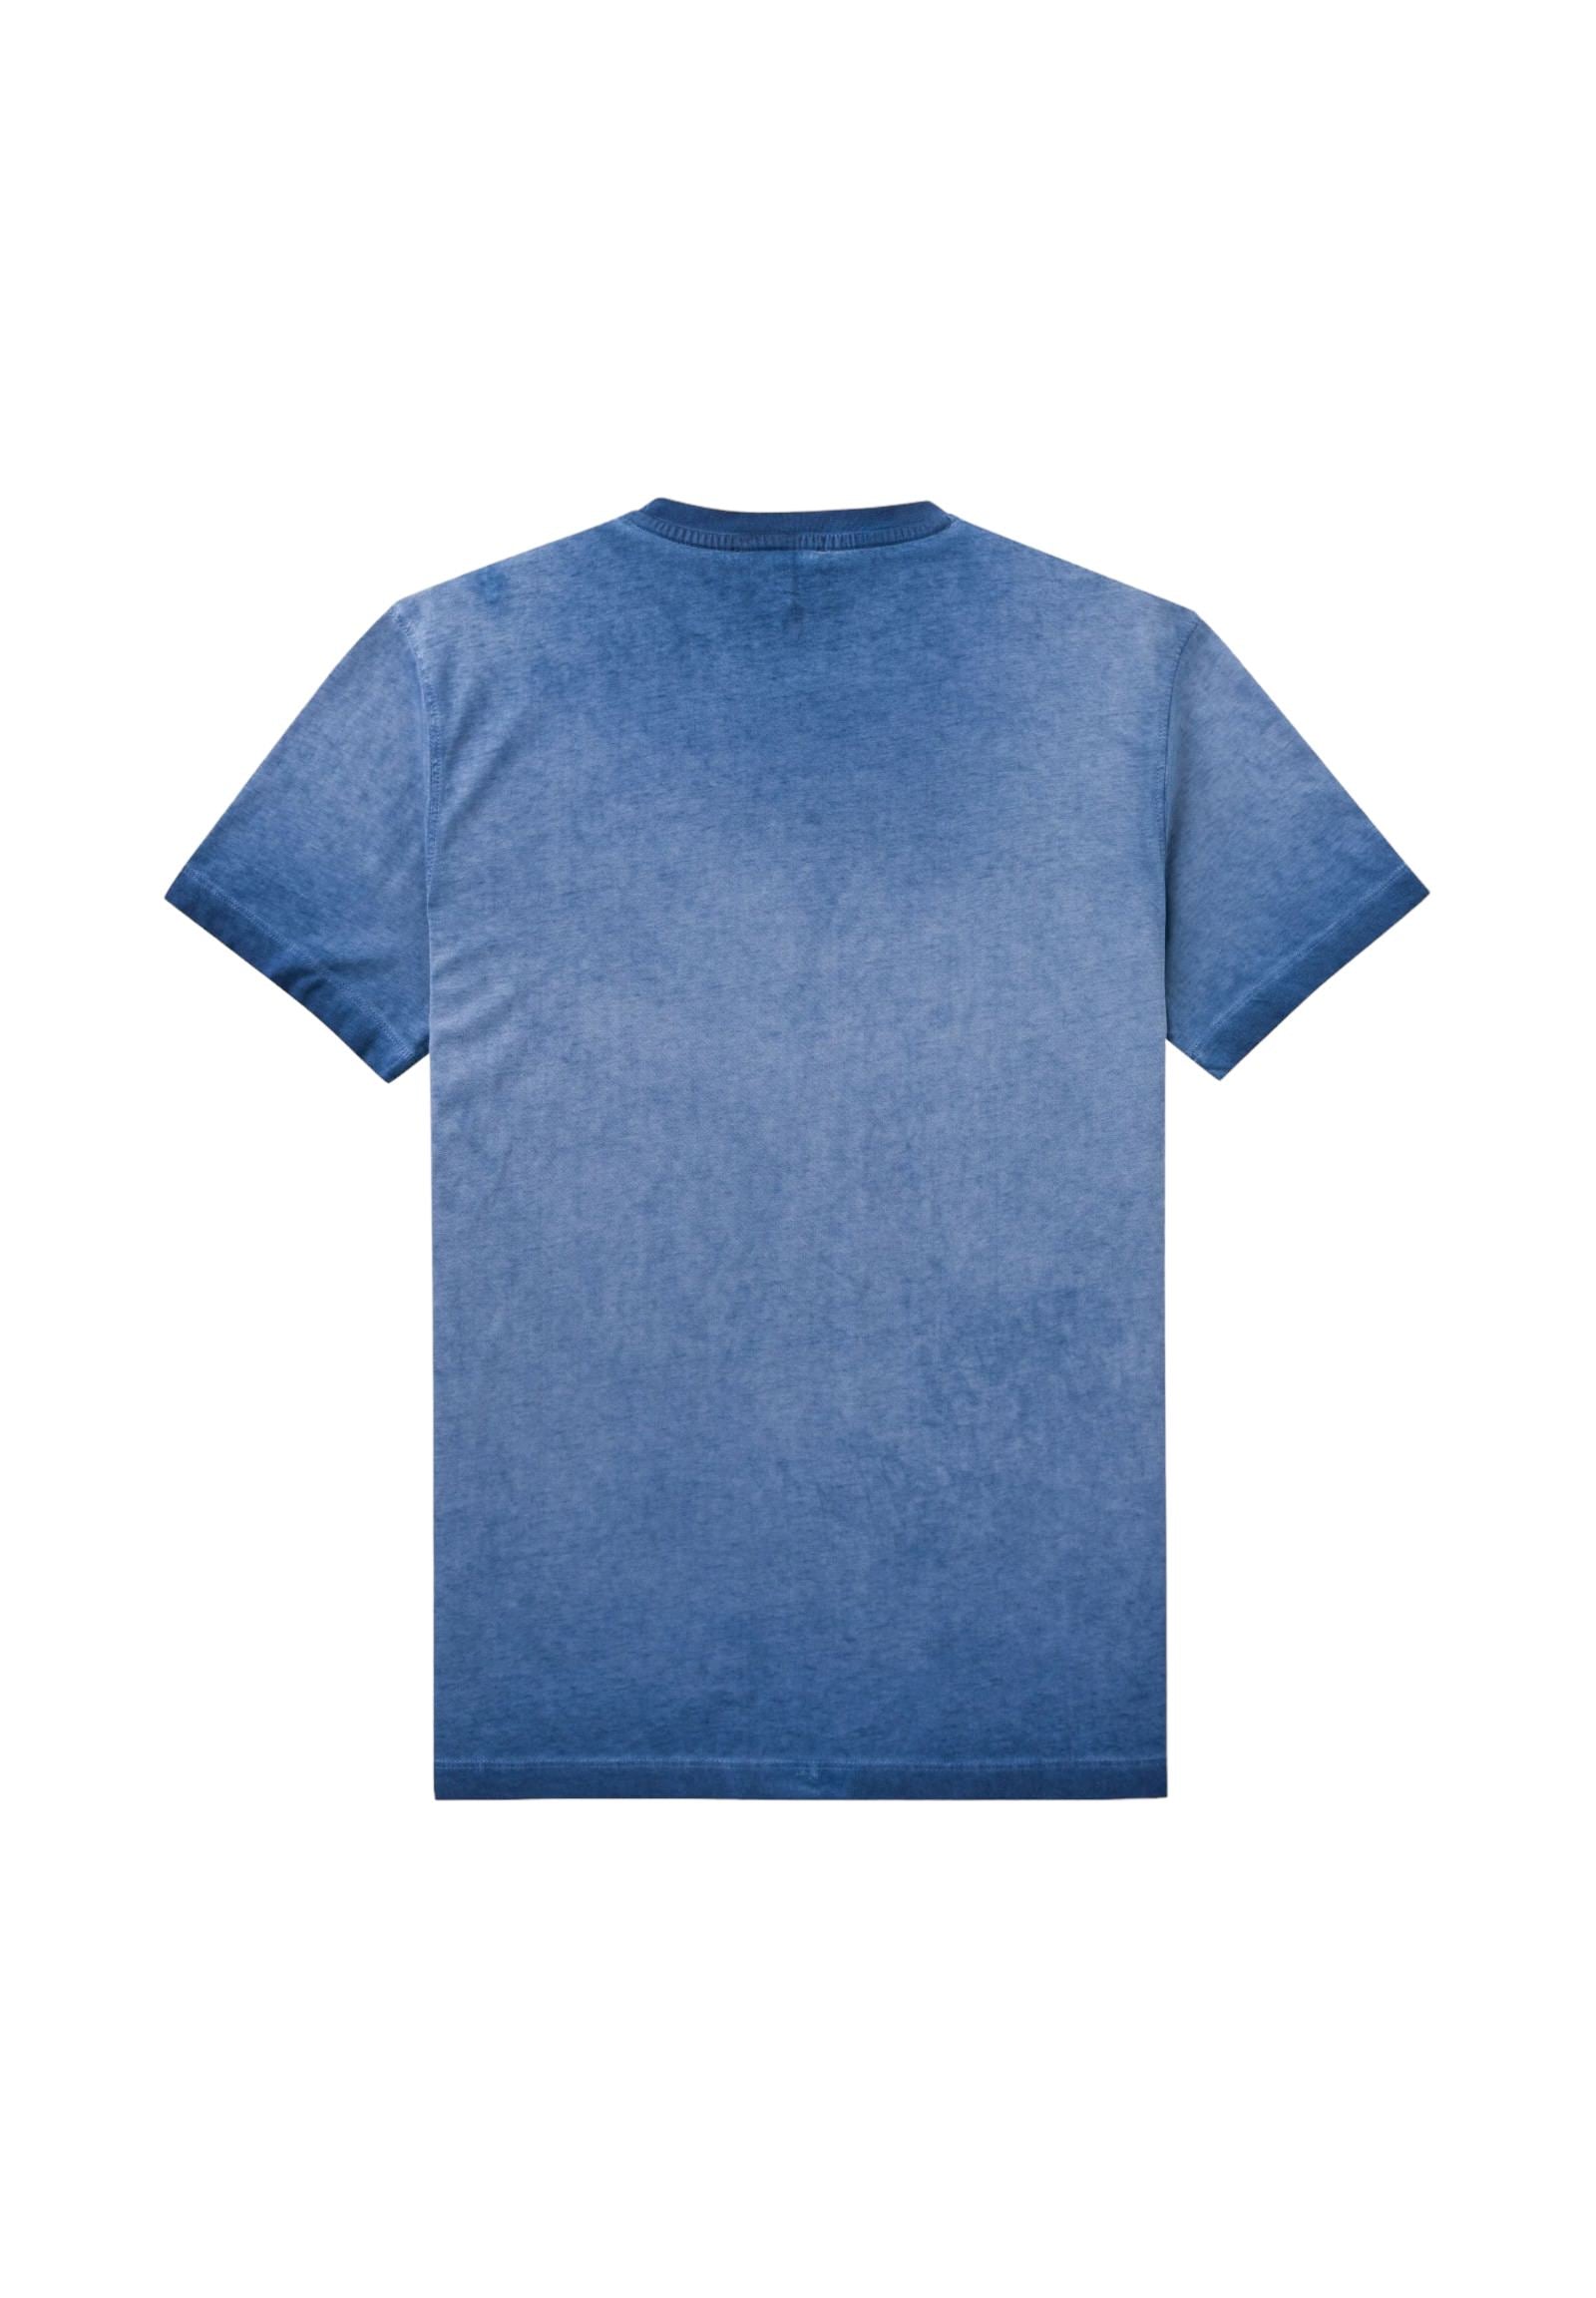 Mcs T-Shirt* 10mts014-02308 Light Navy